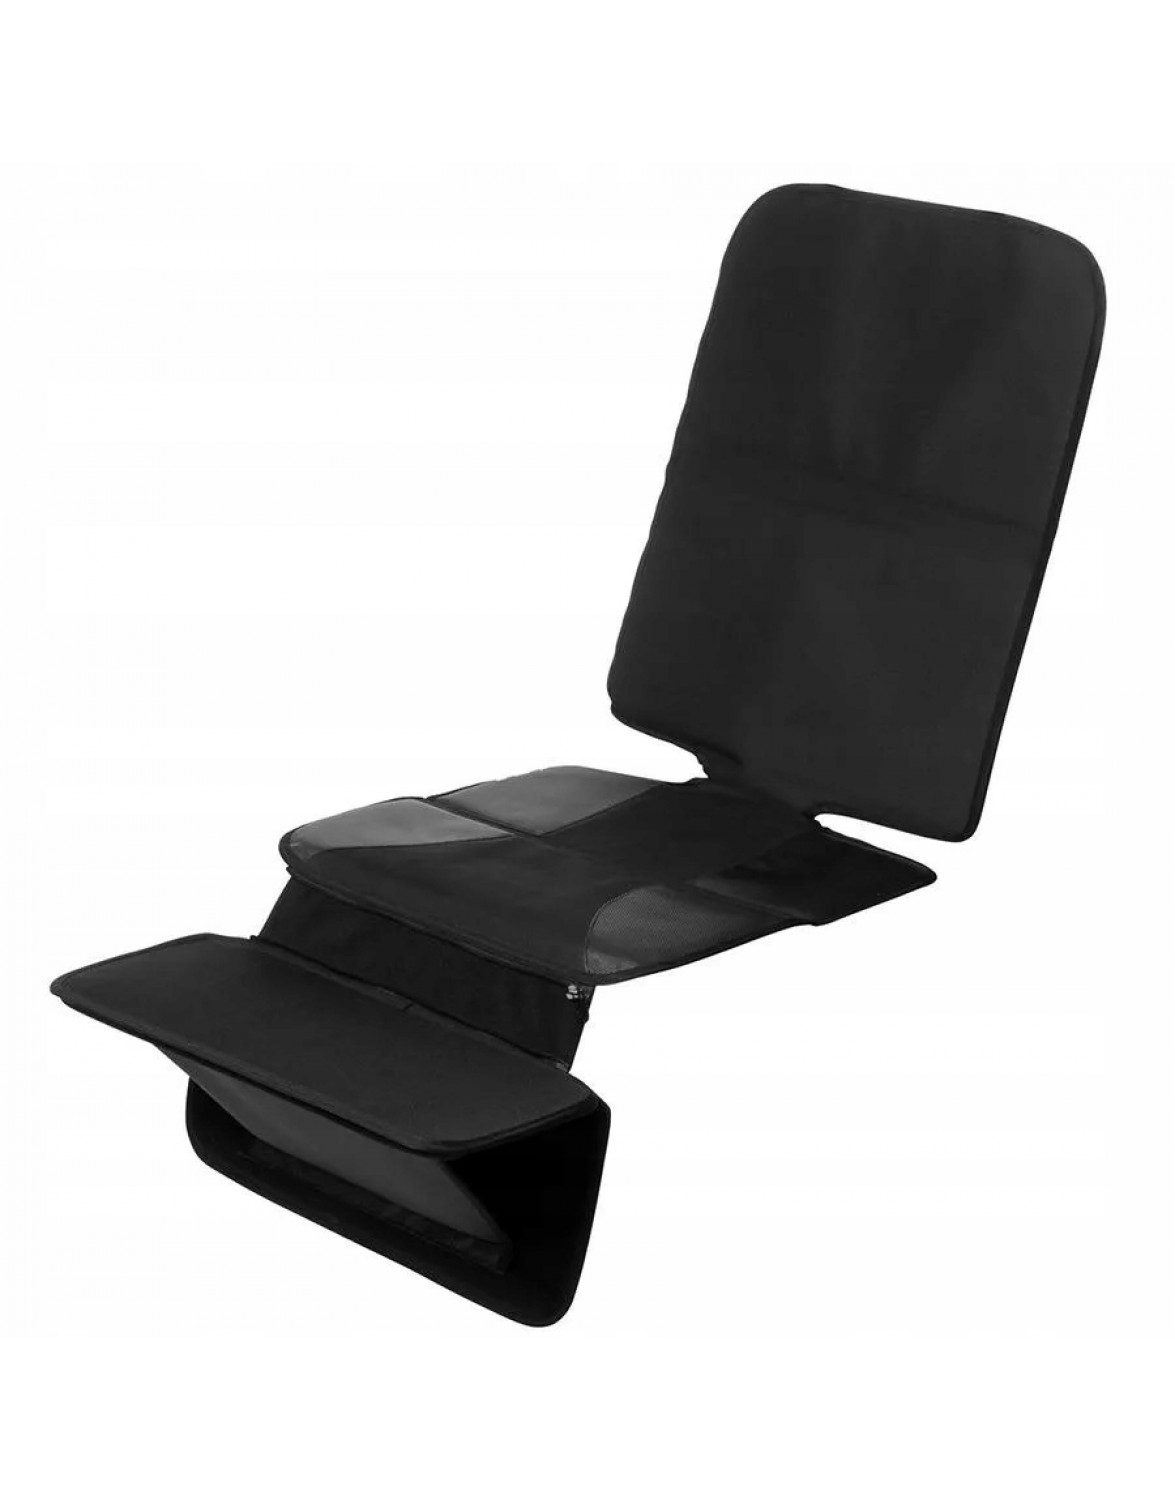 Захисна накладка для автомобільного сидіння Osann FeetUp в комплекті з підставкою для ніг, чорна. Захисний килимок для сидіння + підставка для ні